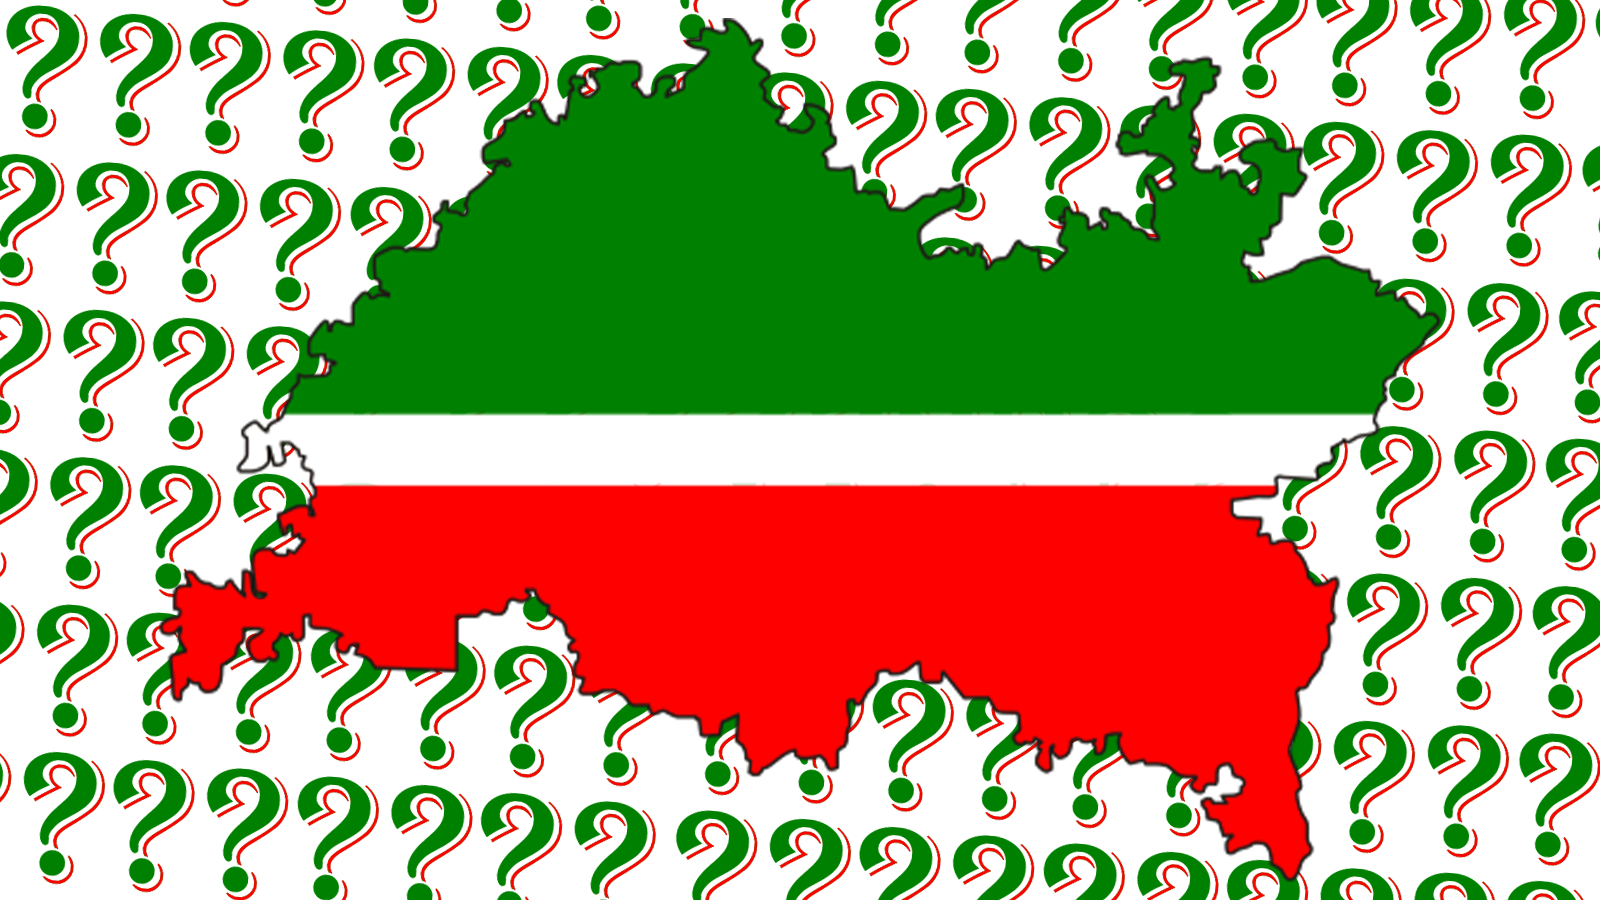 Історичні шанси Татарстану – що робити зараз із урахуванням уроків минулого?